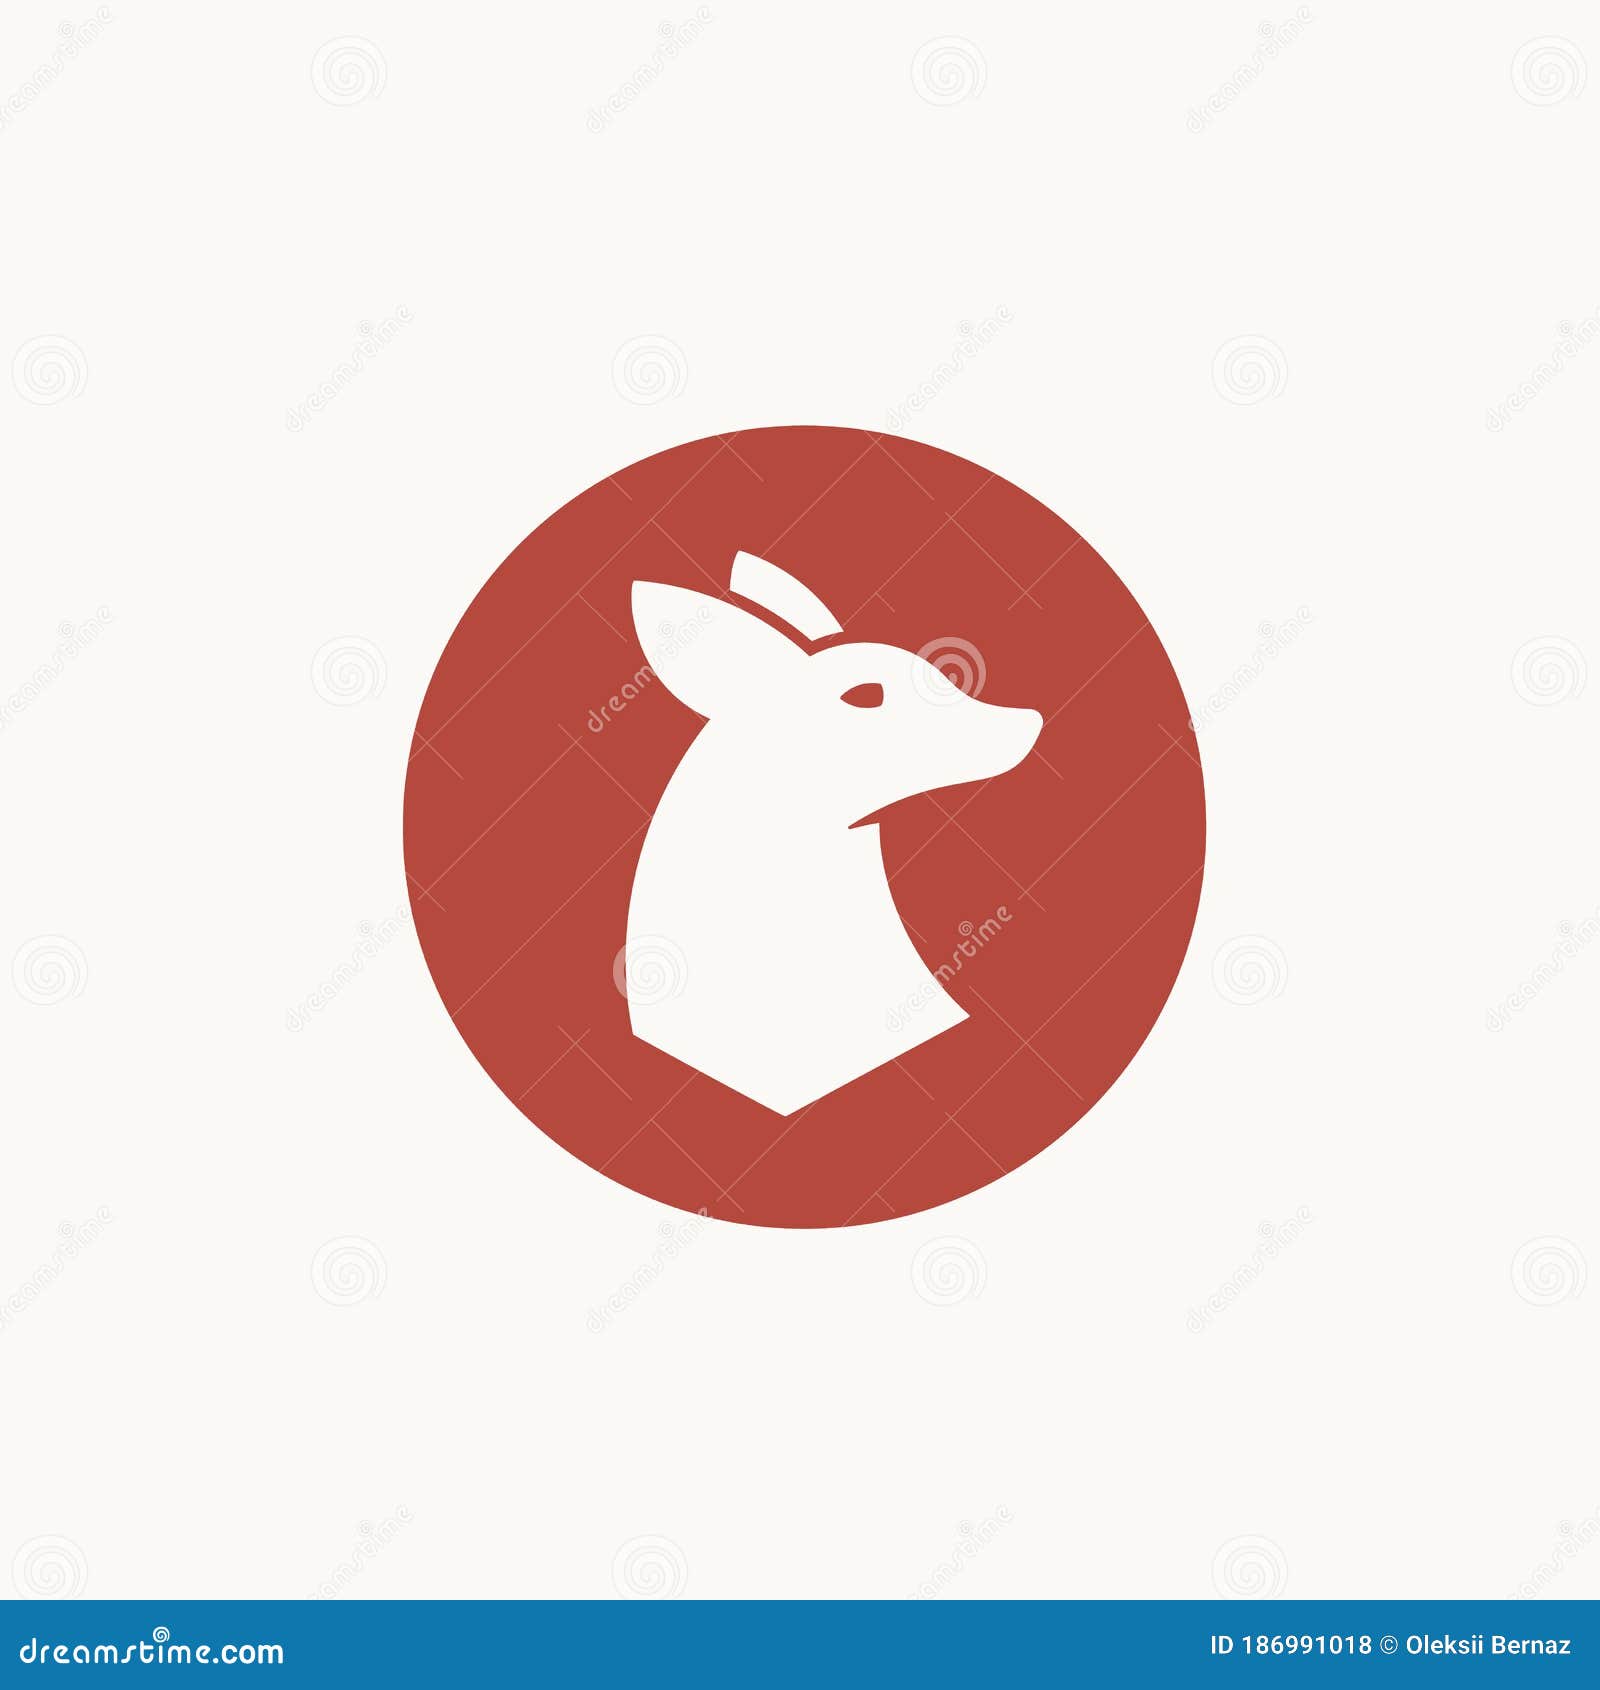 Premium Vector  Simple unique deer fawn logo design